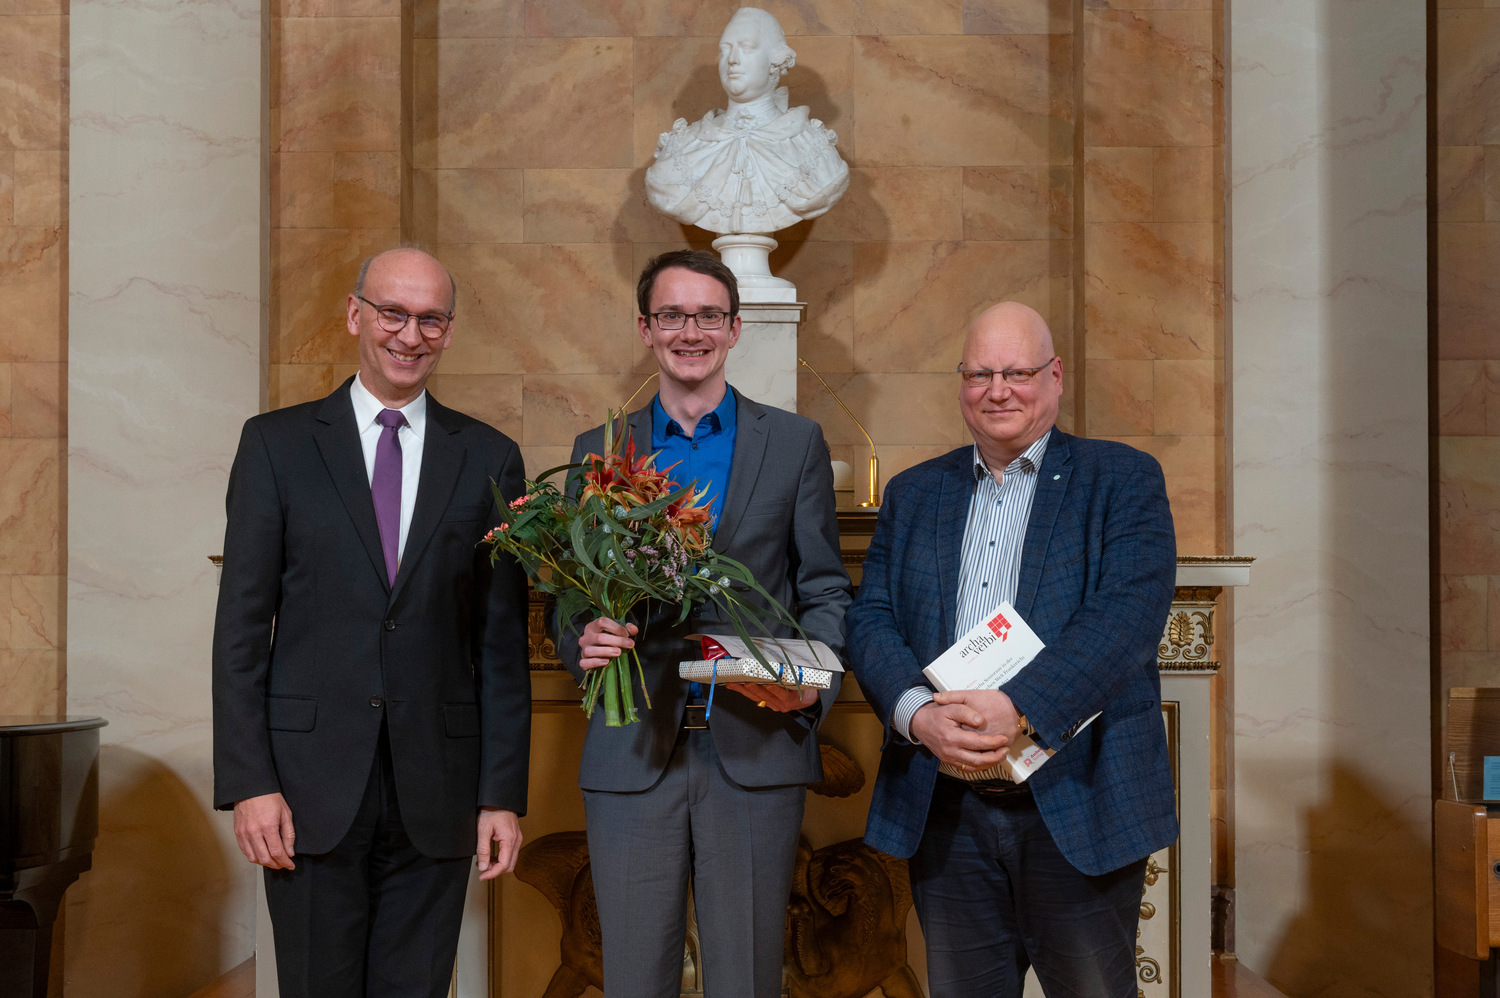 Verleihung des Dissertationspreises des Universitätsbundes Göttingen e.V. an Dr. Jan Reitzner (Mitte) durch Prof. Dr. Arnulf Quadt, Vorstandsvorsitzender des Universitätsbundes, (links) und Laudator Prof. Dr. Martin Laube (rechts)